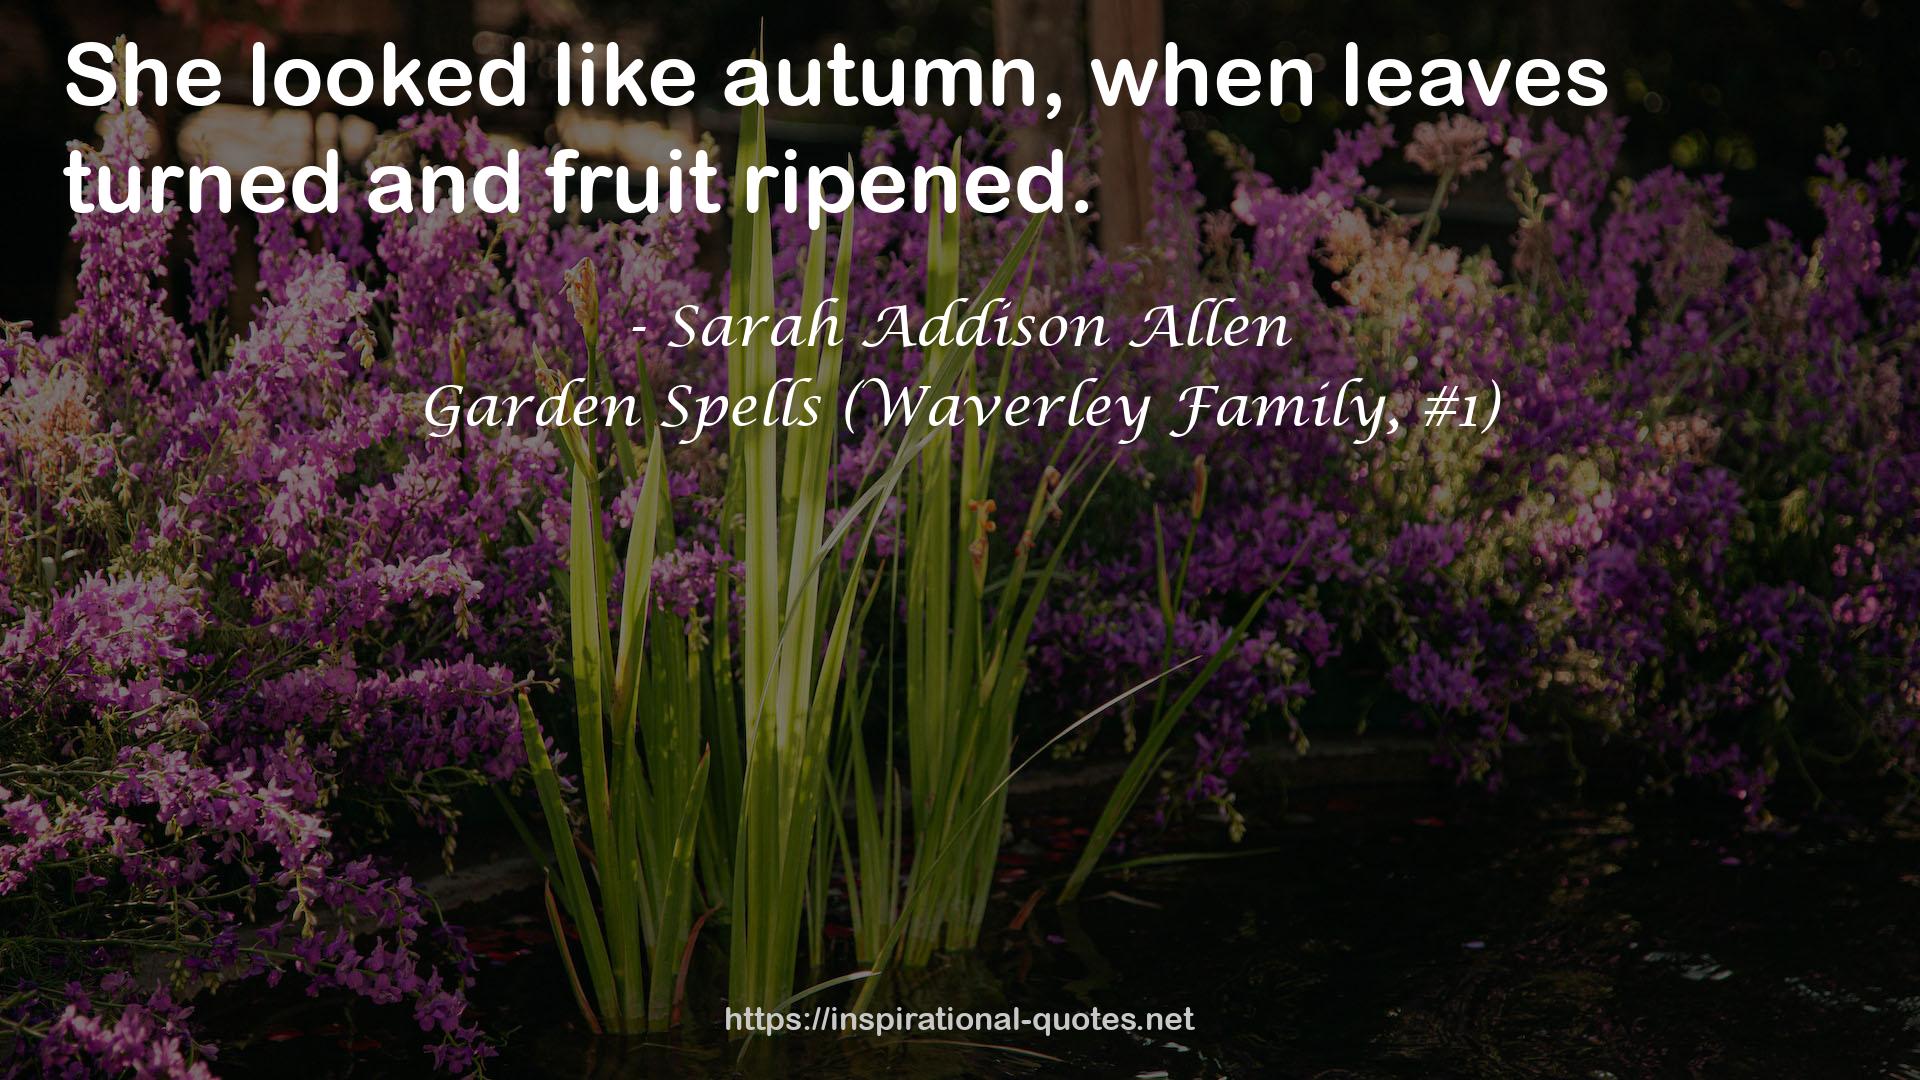 Garden Spells (Waverley Family, #1) QUOTES